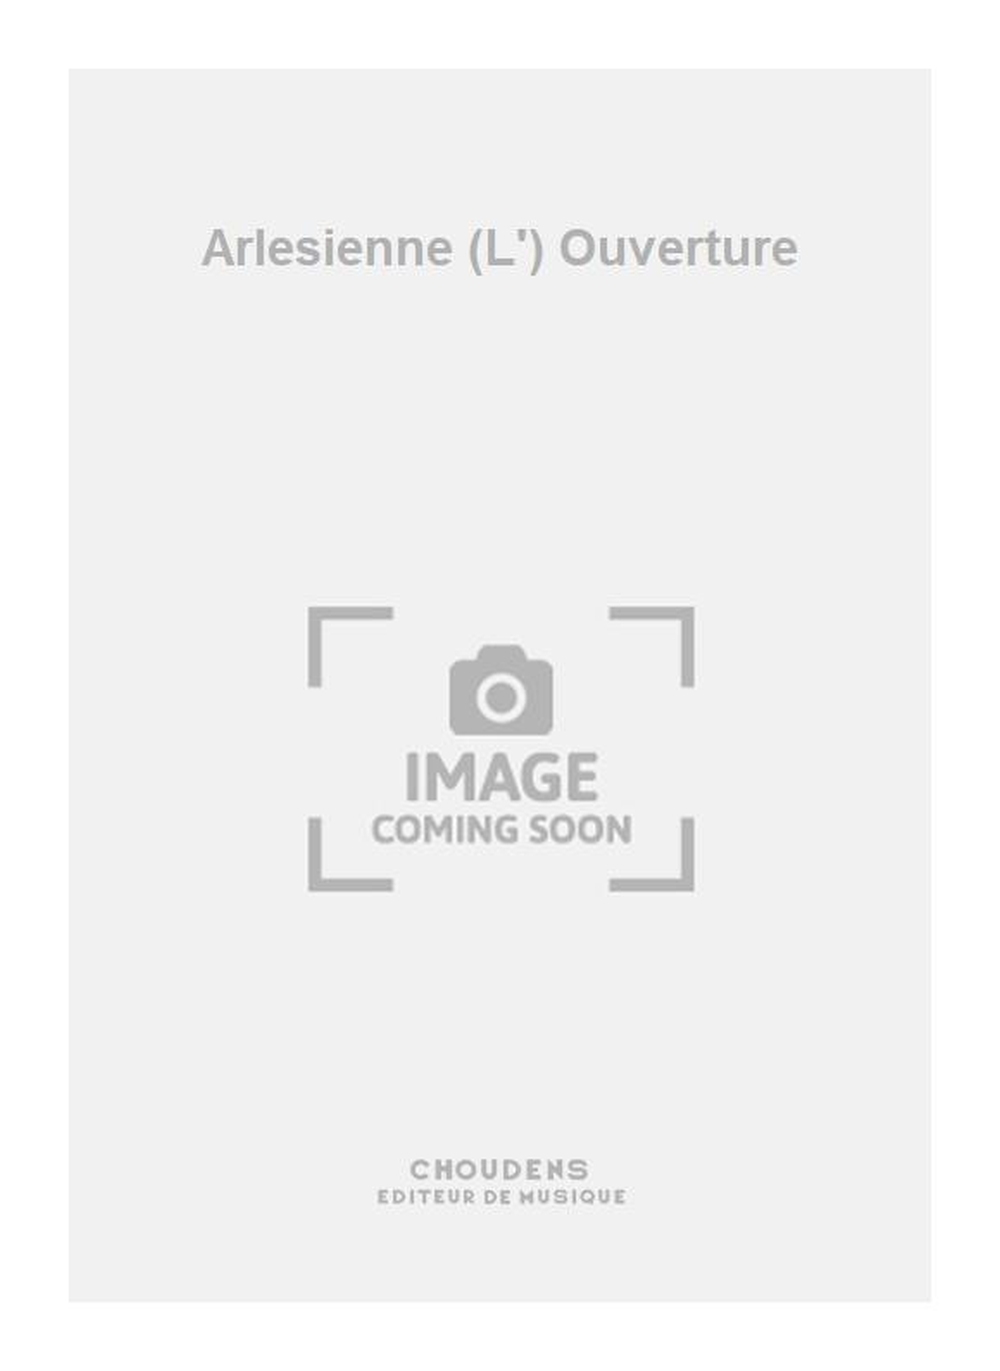 Georges Bizet: Arlesienne (L') Ouverture